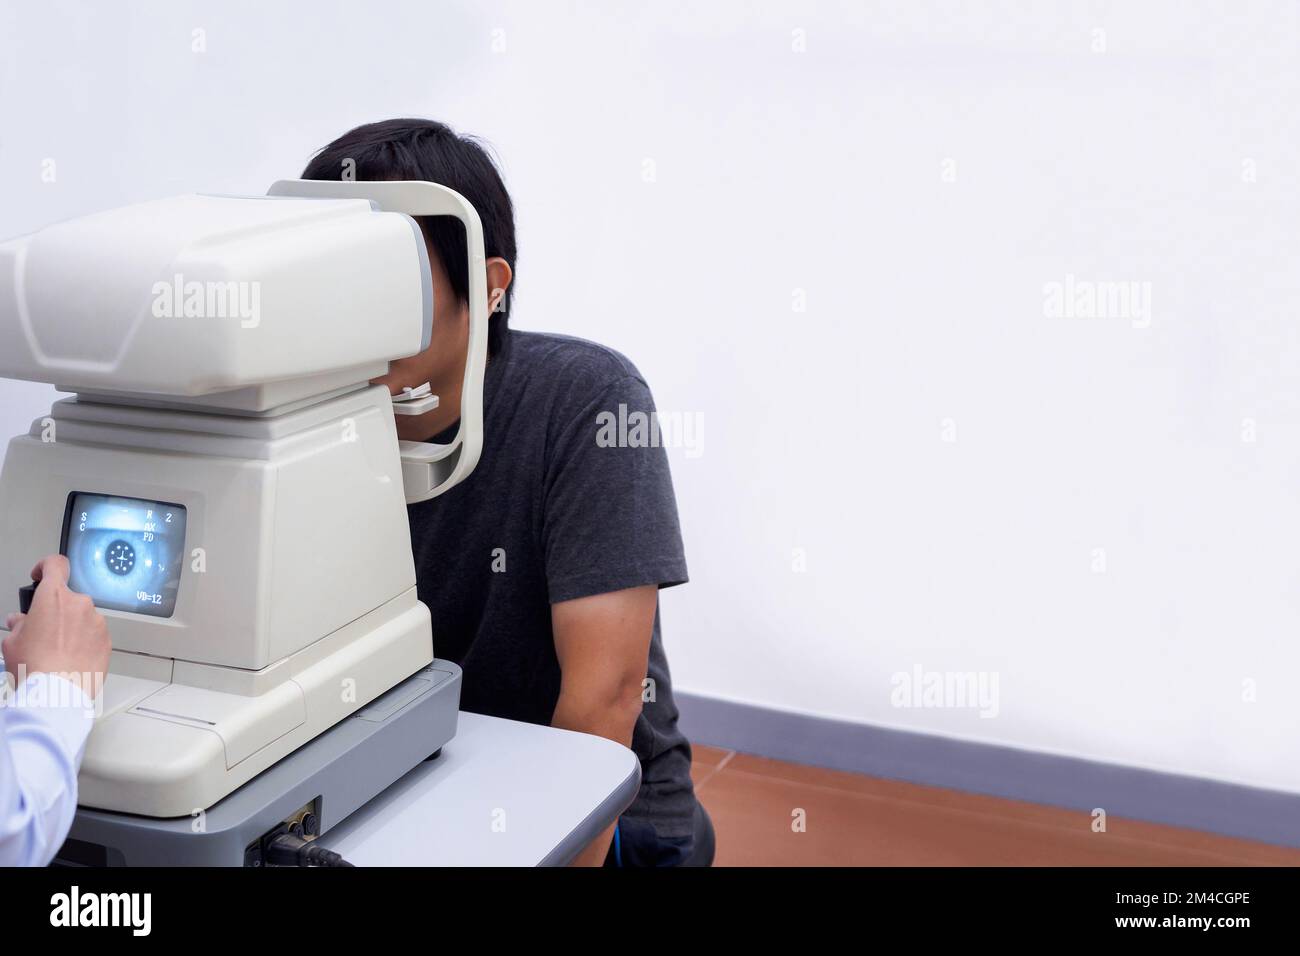 Un jeune homme asiatique élégant se fait un examen visuel avec une machine de test optique Banque D'Images